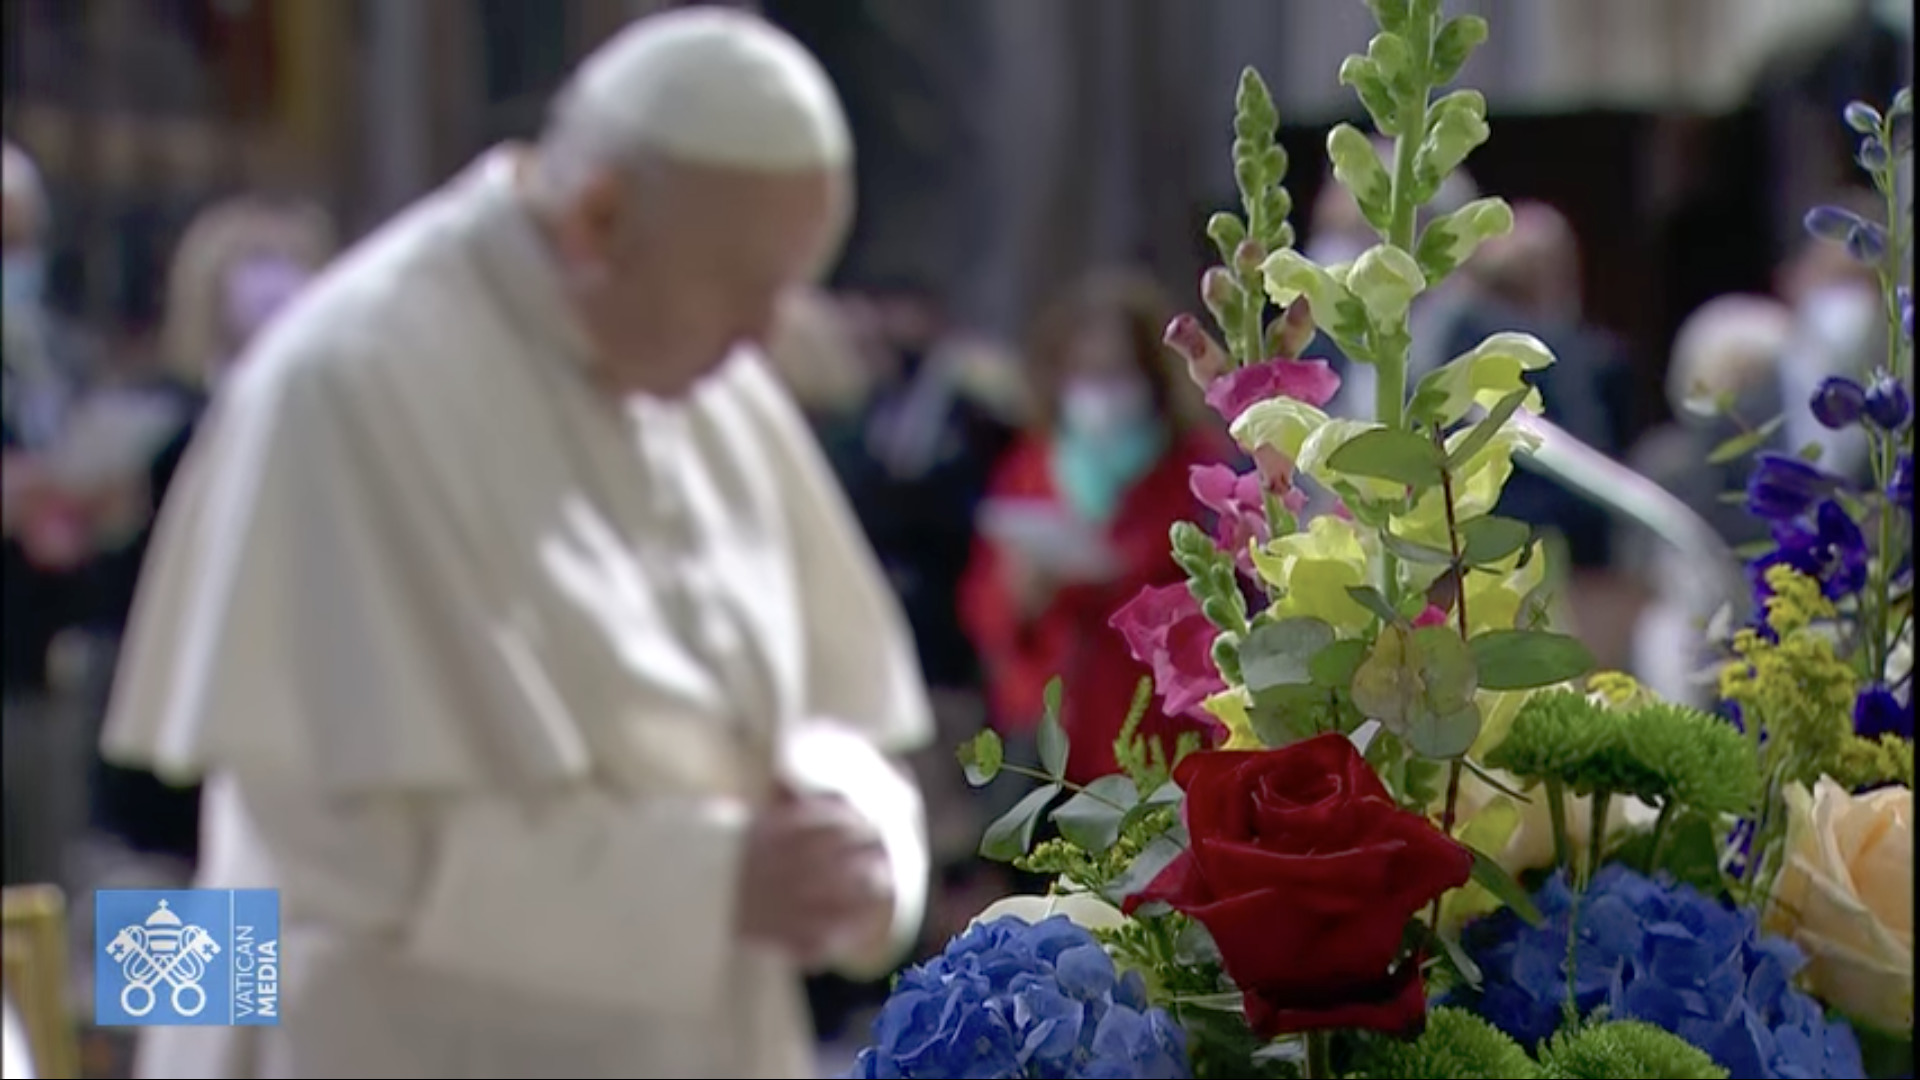 Marathon de prière, Jour 1, capture @ Vatican Media